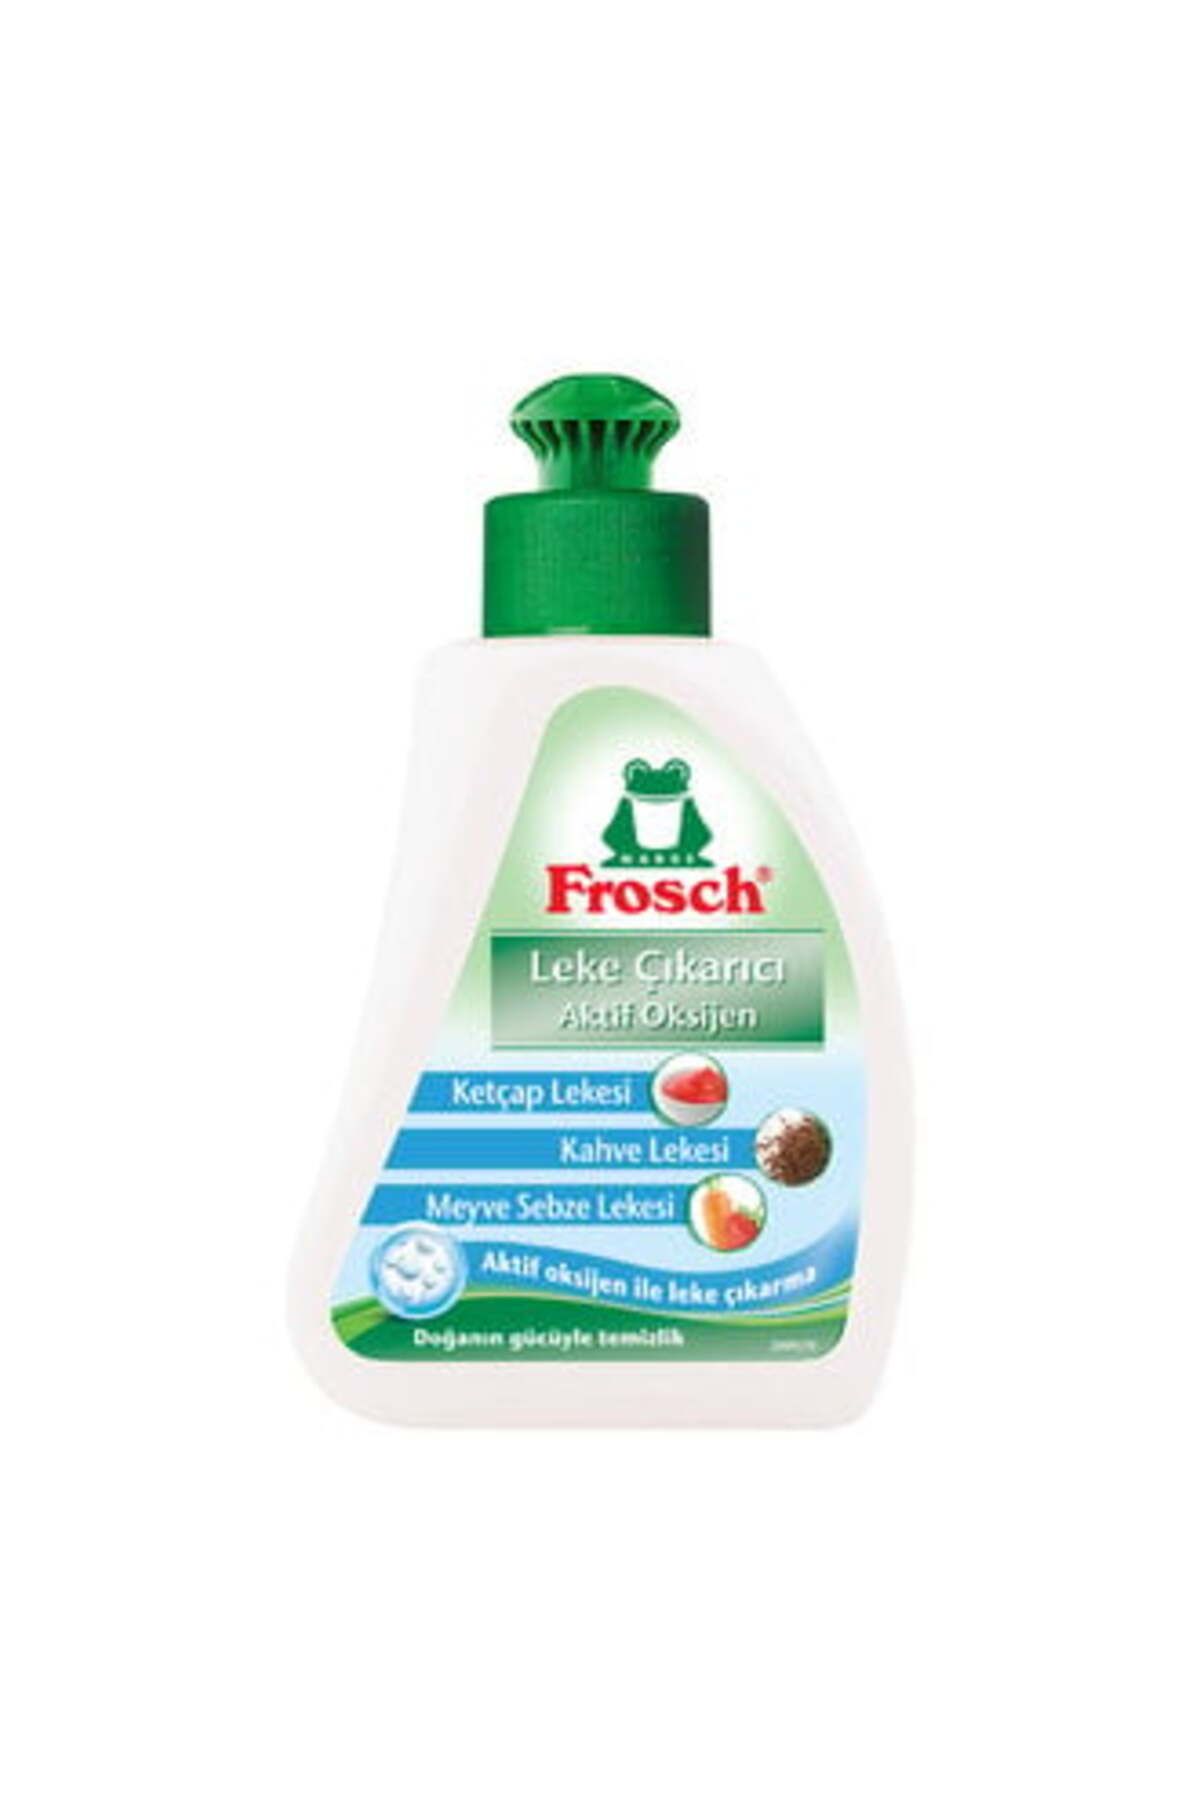 Frosch Leke Çıkarıcı Aktif Oksijen 75 ml ( 5 ADET )